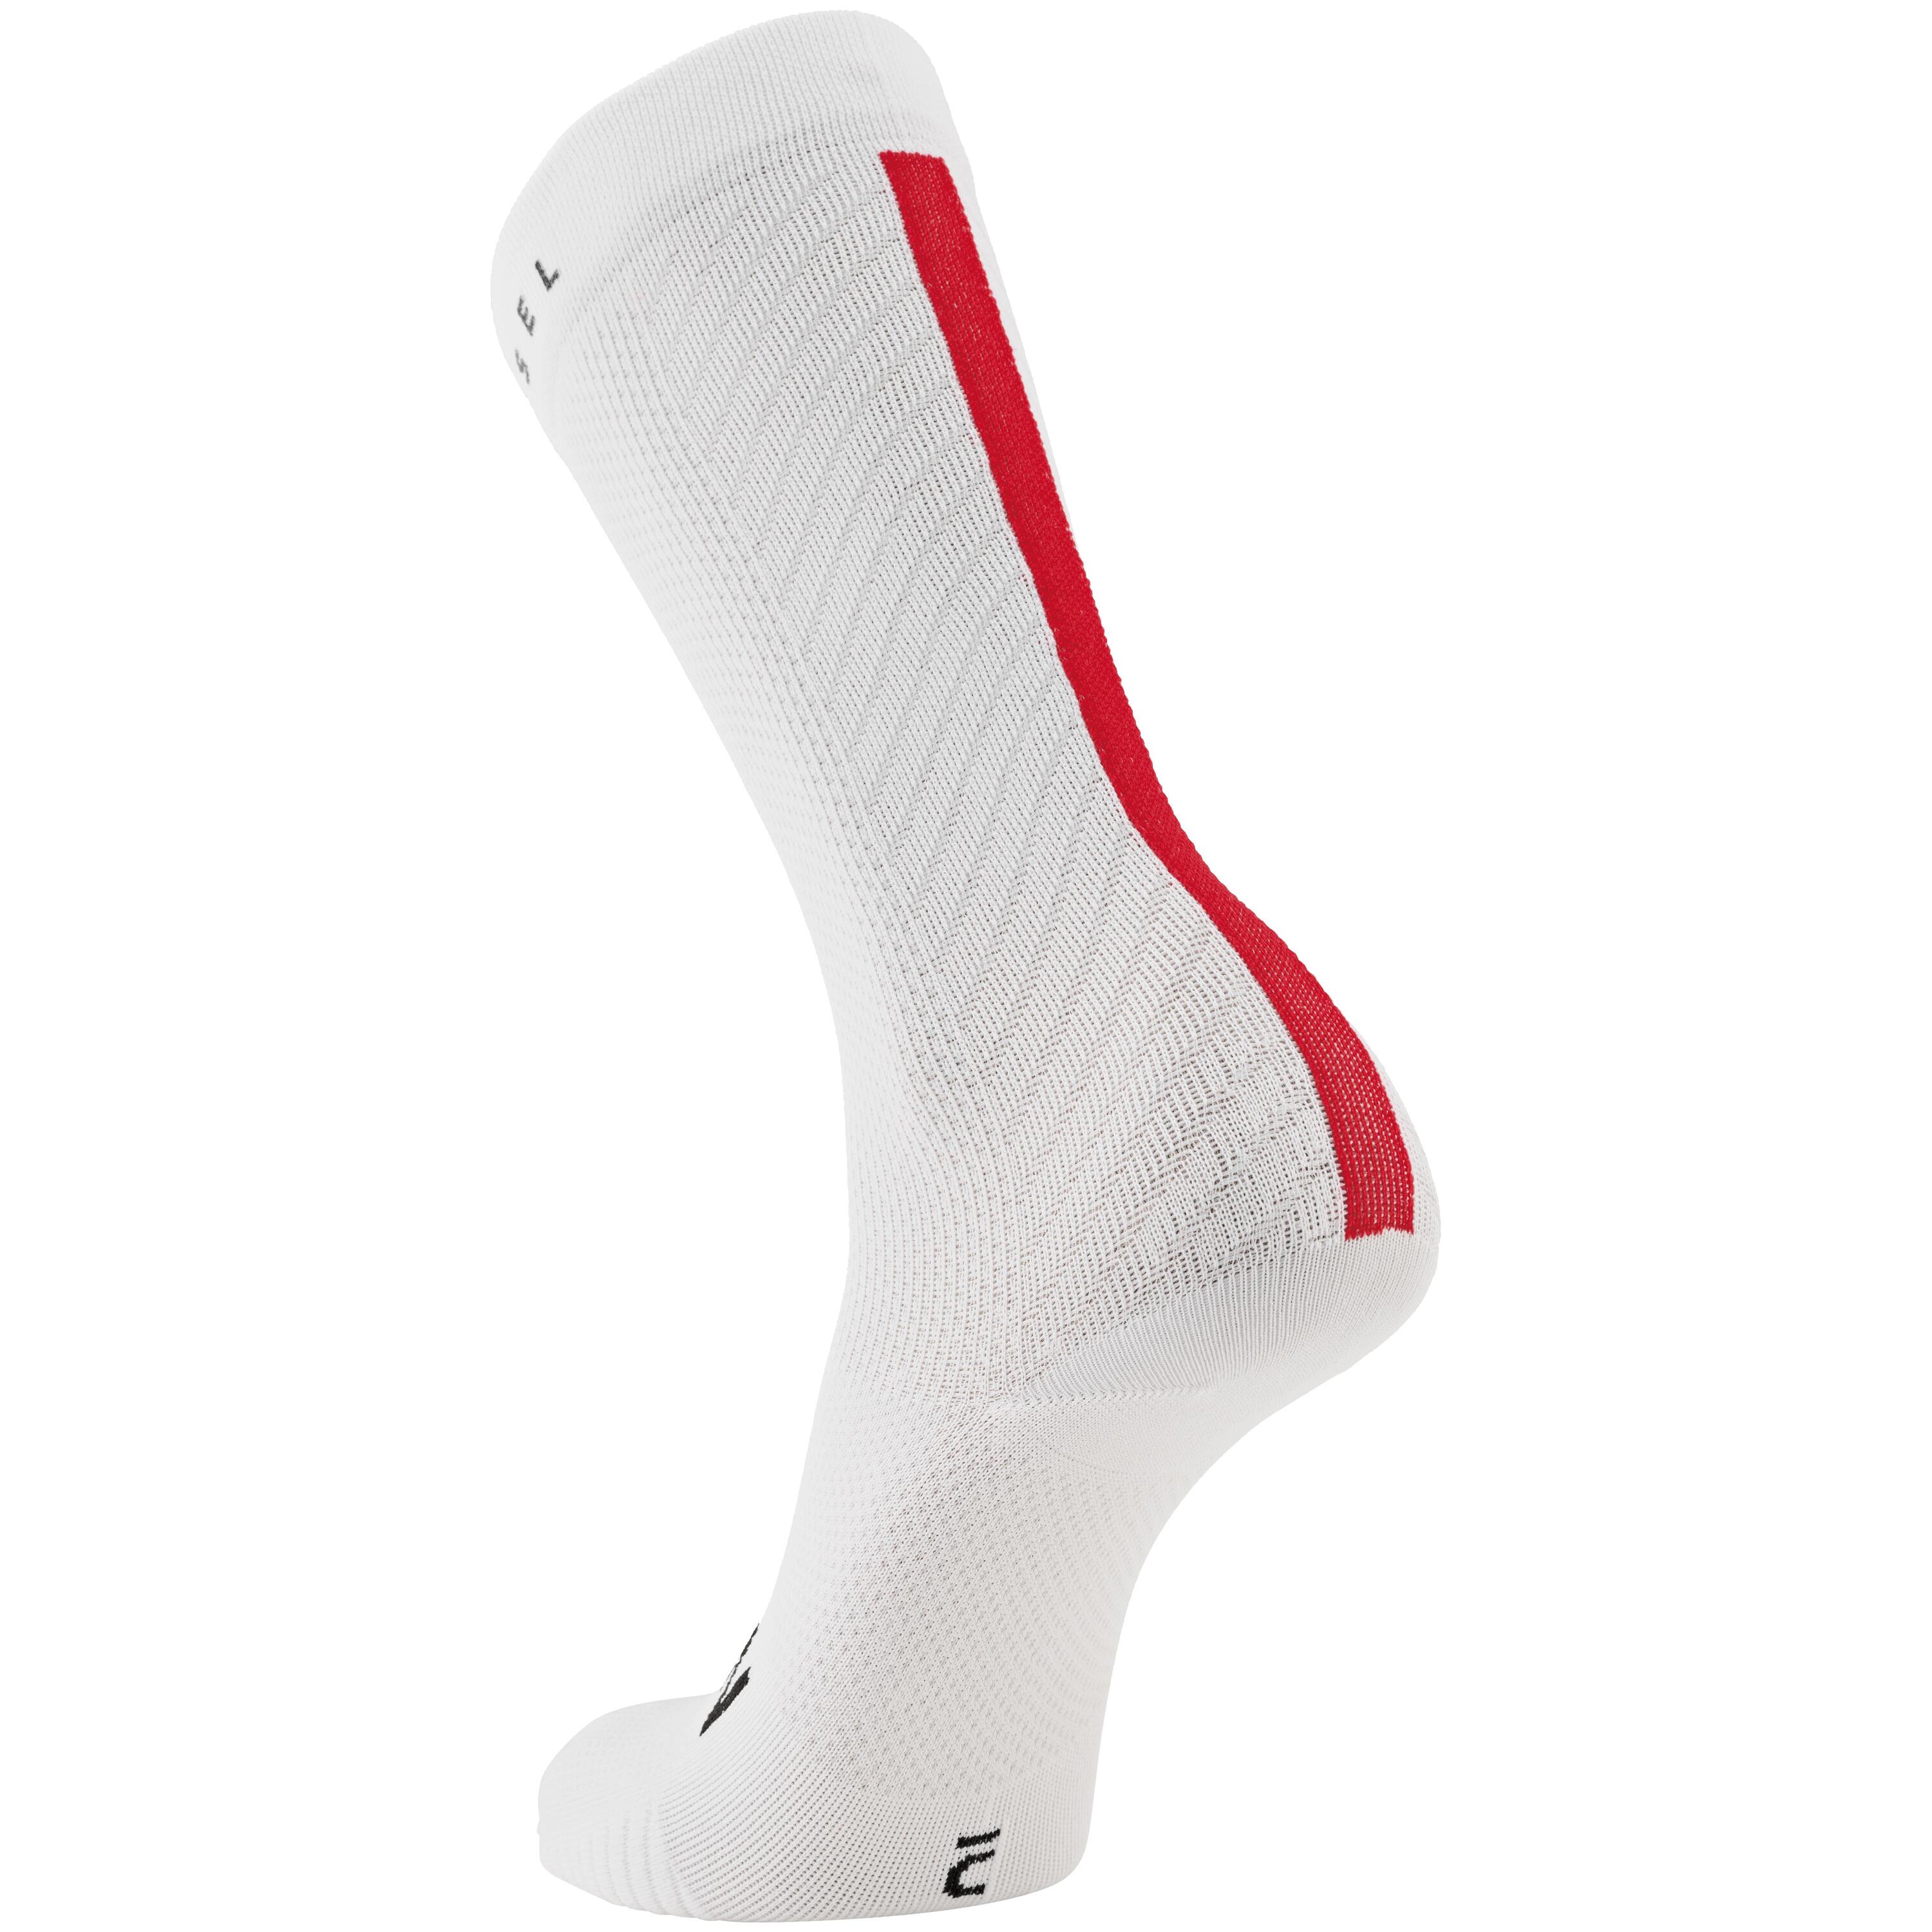 Cofidis Replica Road Cycling Socks - White 2/3